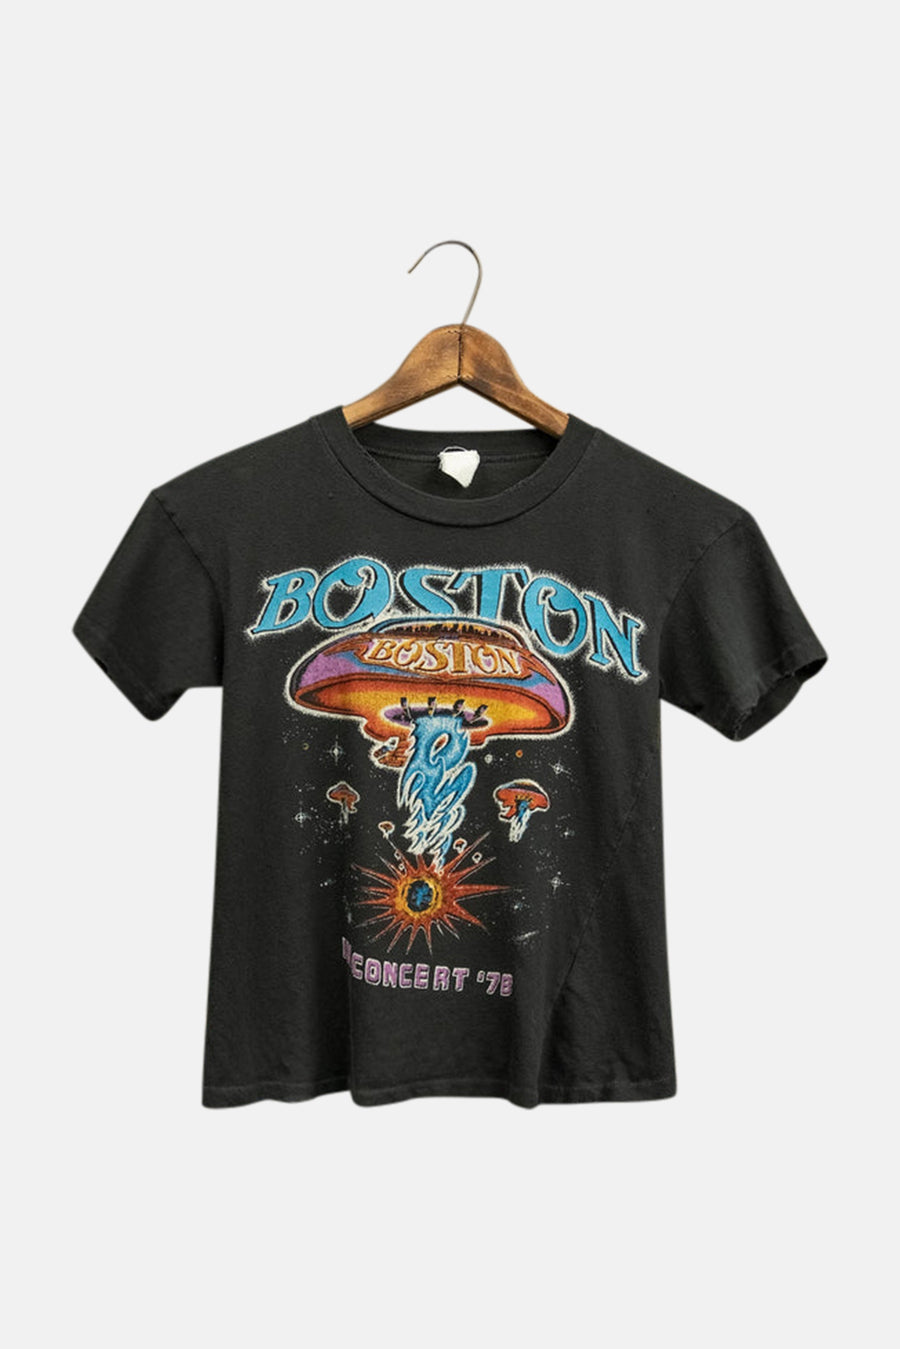 Boston In Concert '78 Crop Tee Coal Pigment